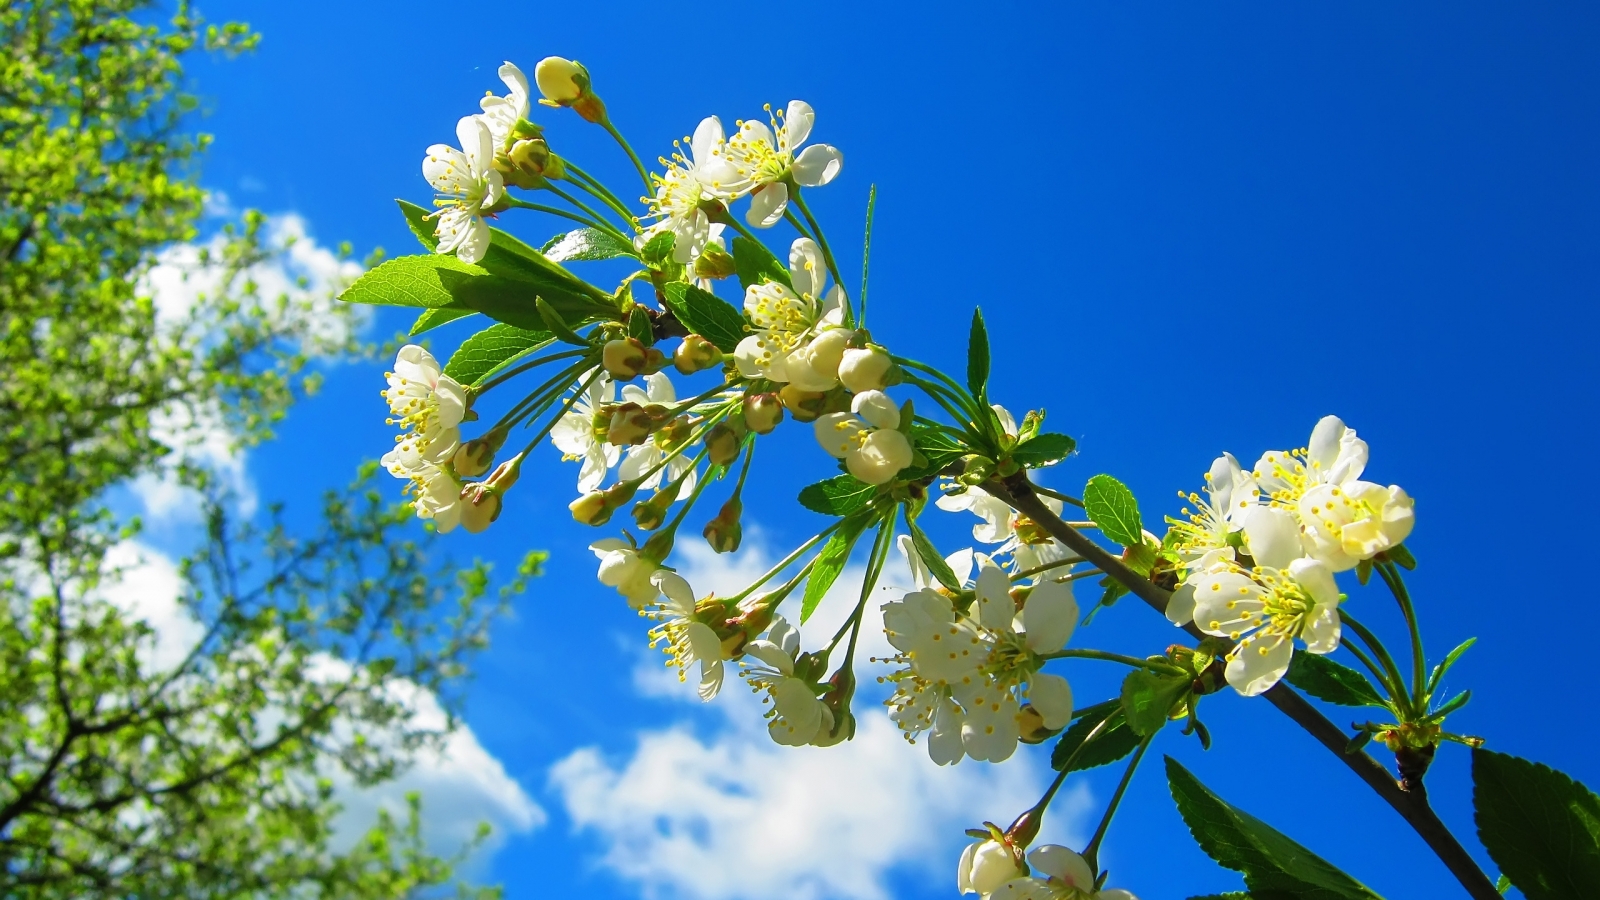 Spring Flower Tree for 1600 x 900 HDTV resolution